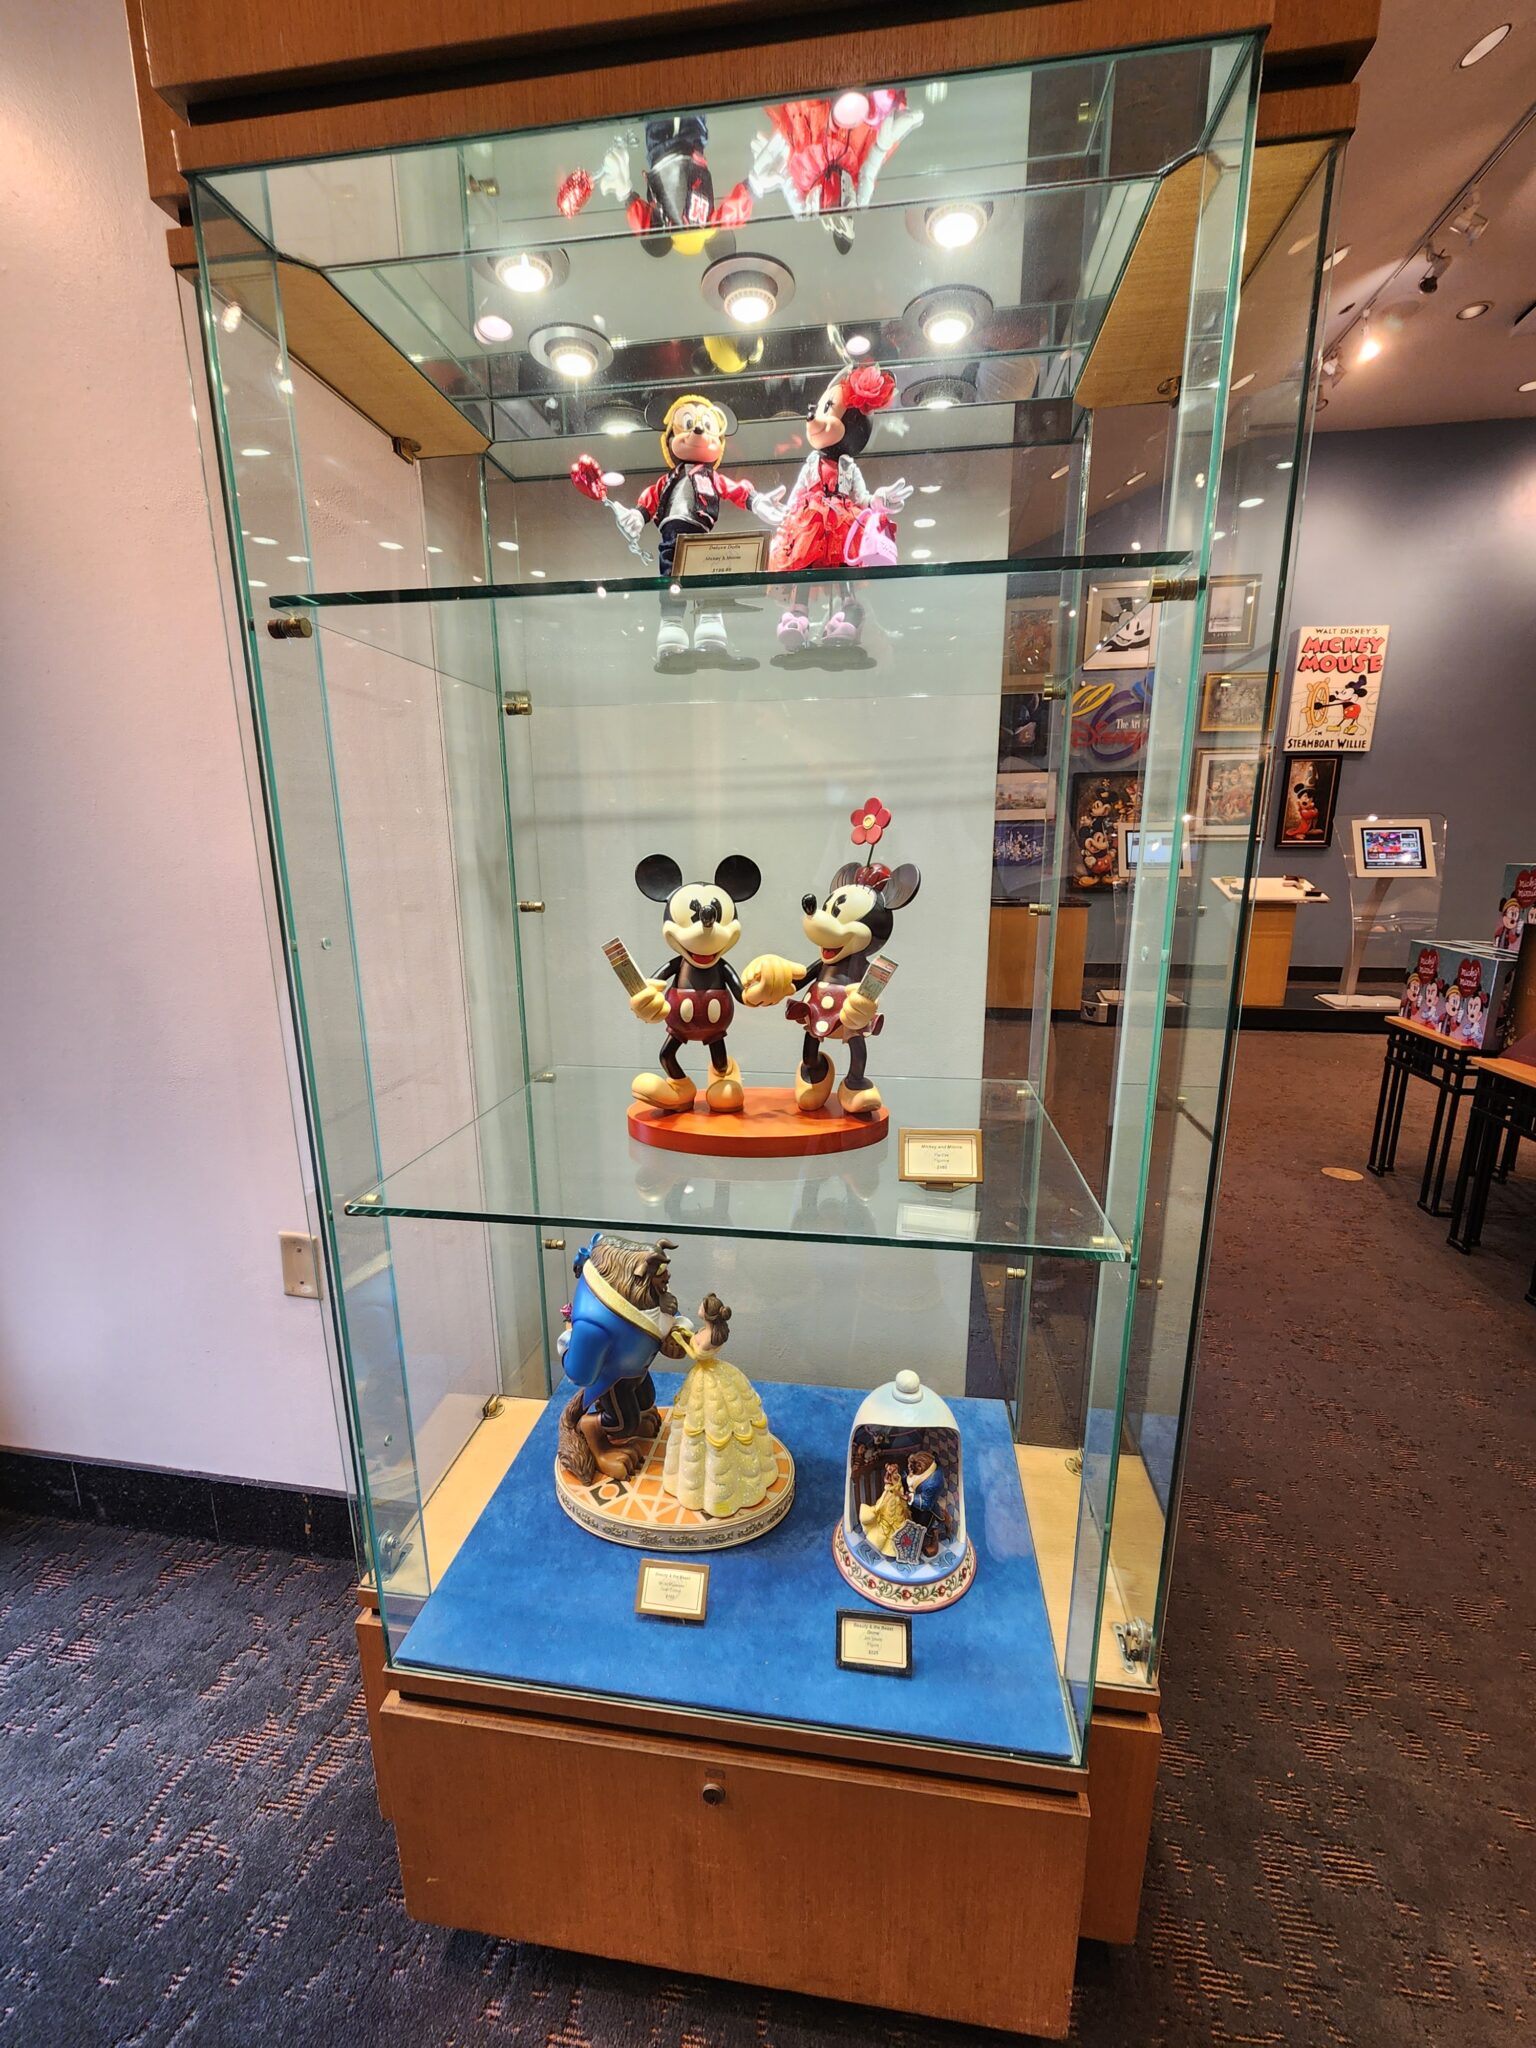 Objets de collection uniques - Art of Disney à Disney Springs